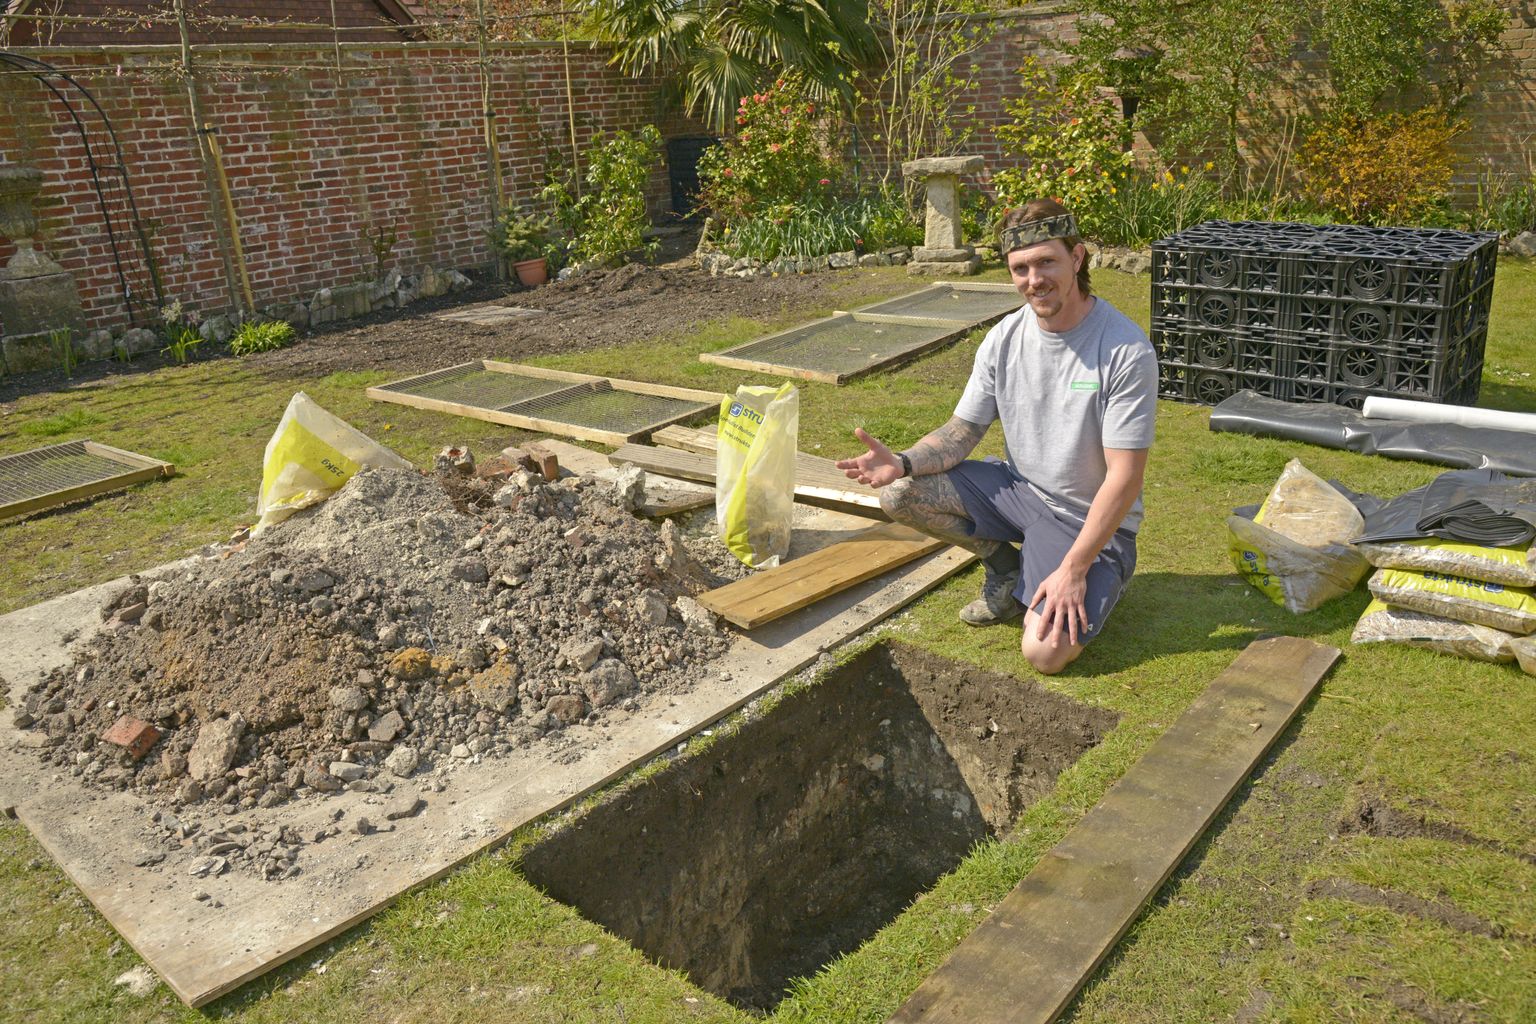 Briti ehitaja Robbie Kearney, kes leidis Heytesburys asuva maja aiast viis inimskeletti